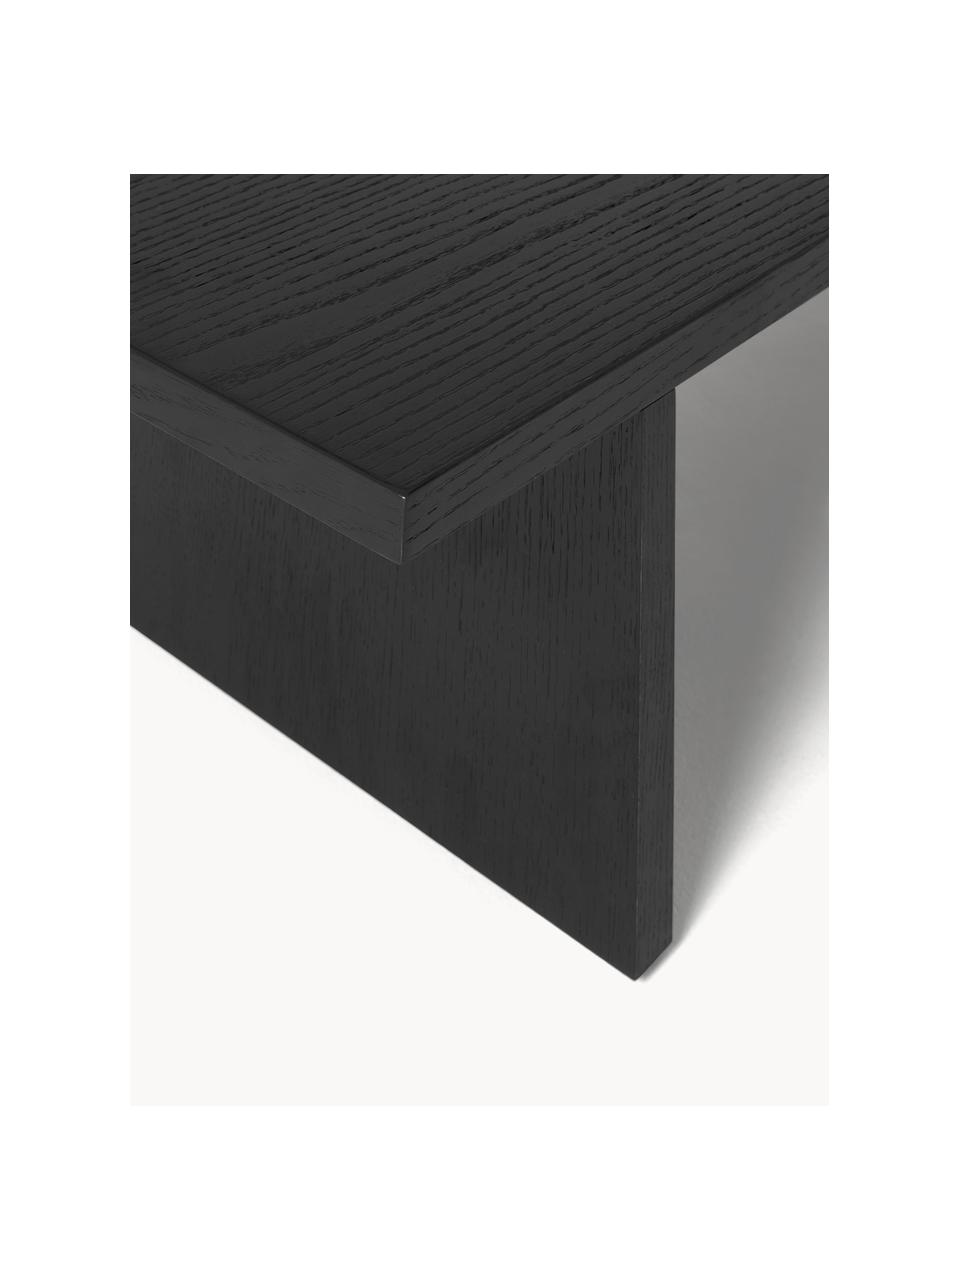 Niedriger Holz-Couchtisch Dako, Schwarz, B 120 x H 25 cm